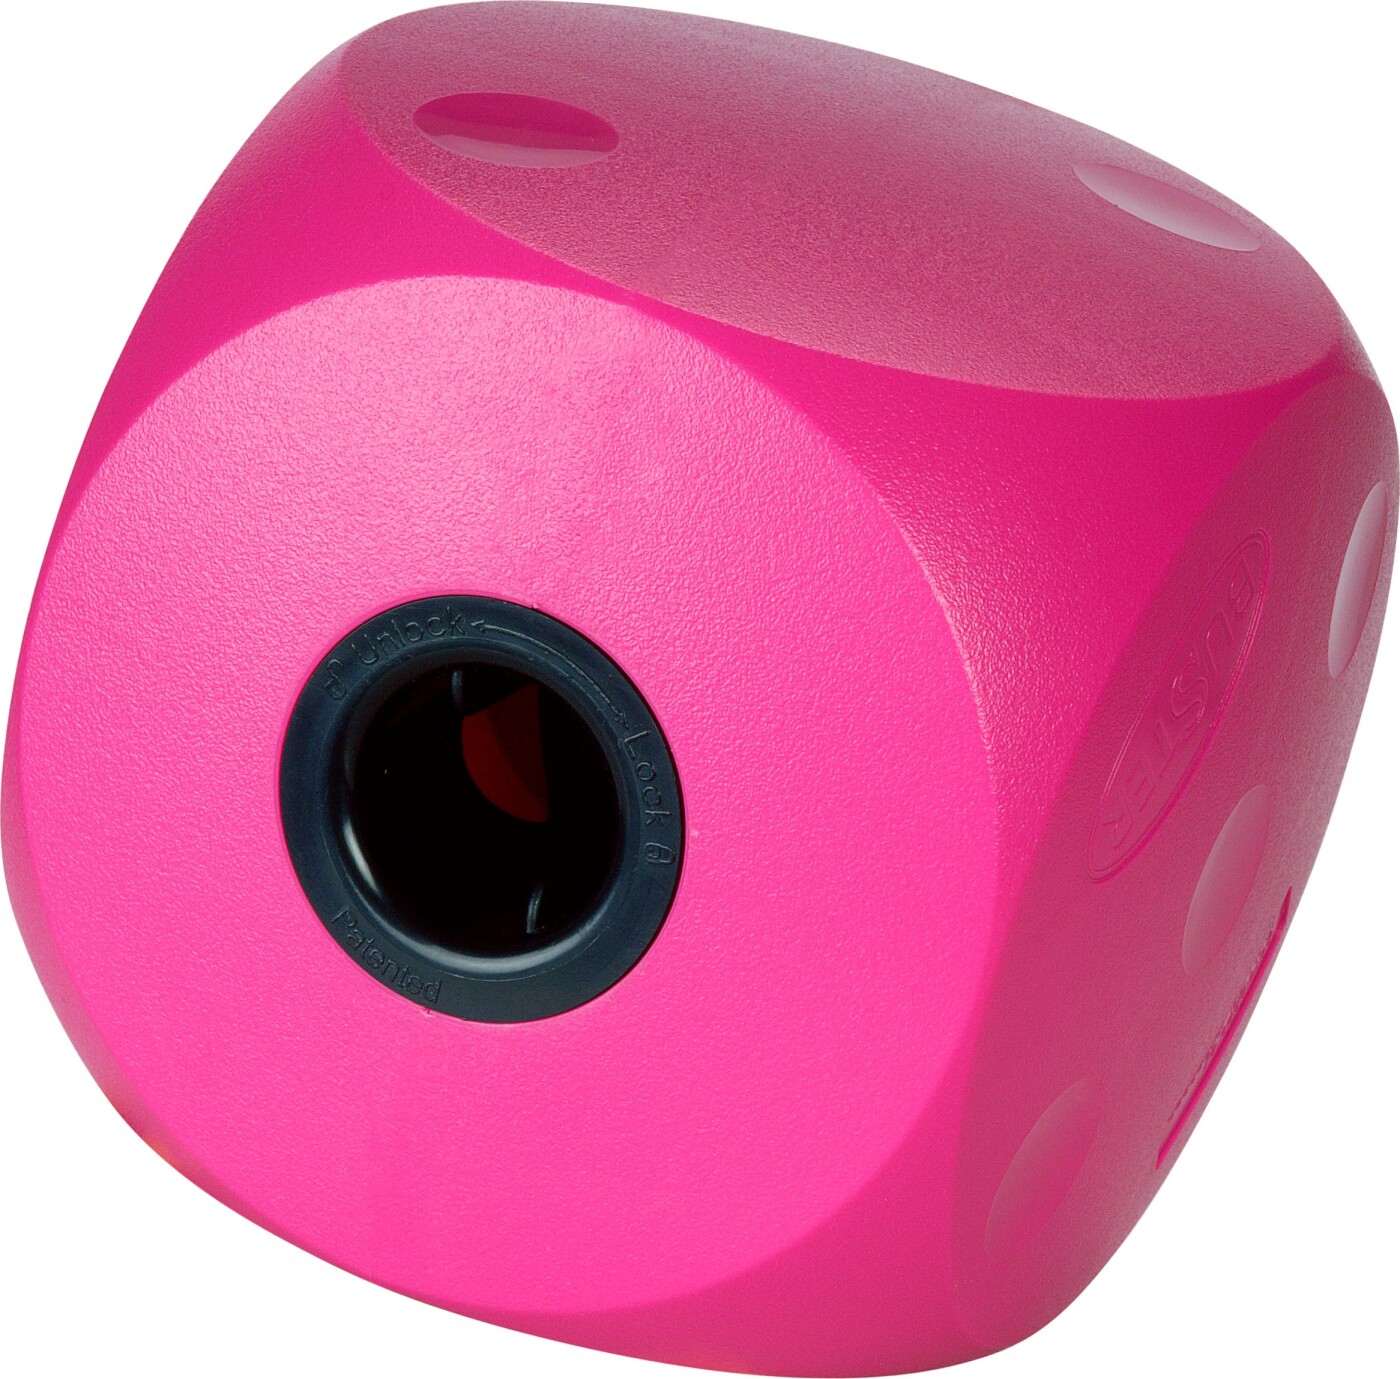 Billede af Buster - Mini Cube Hundelegetøj - Pink - 9 Cm hos Gucca.dk